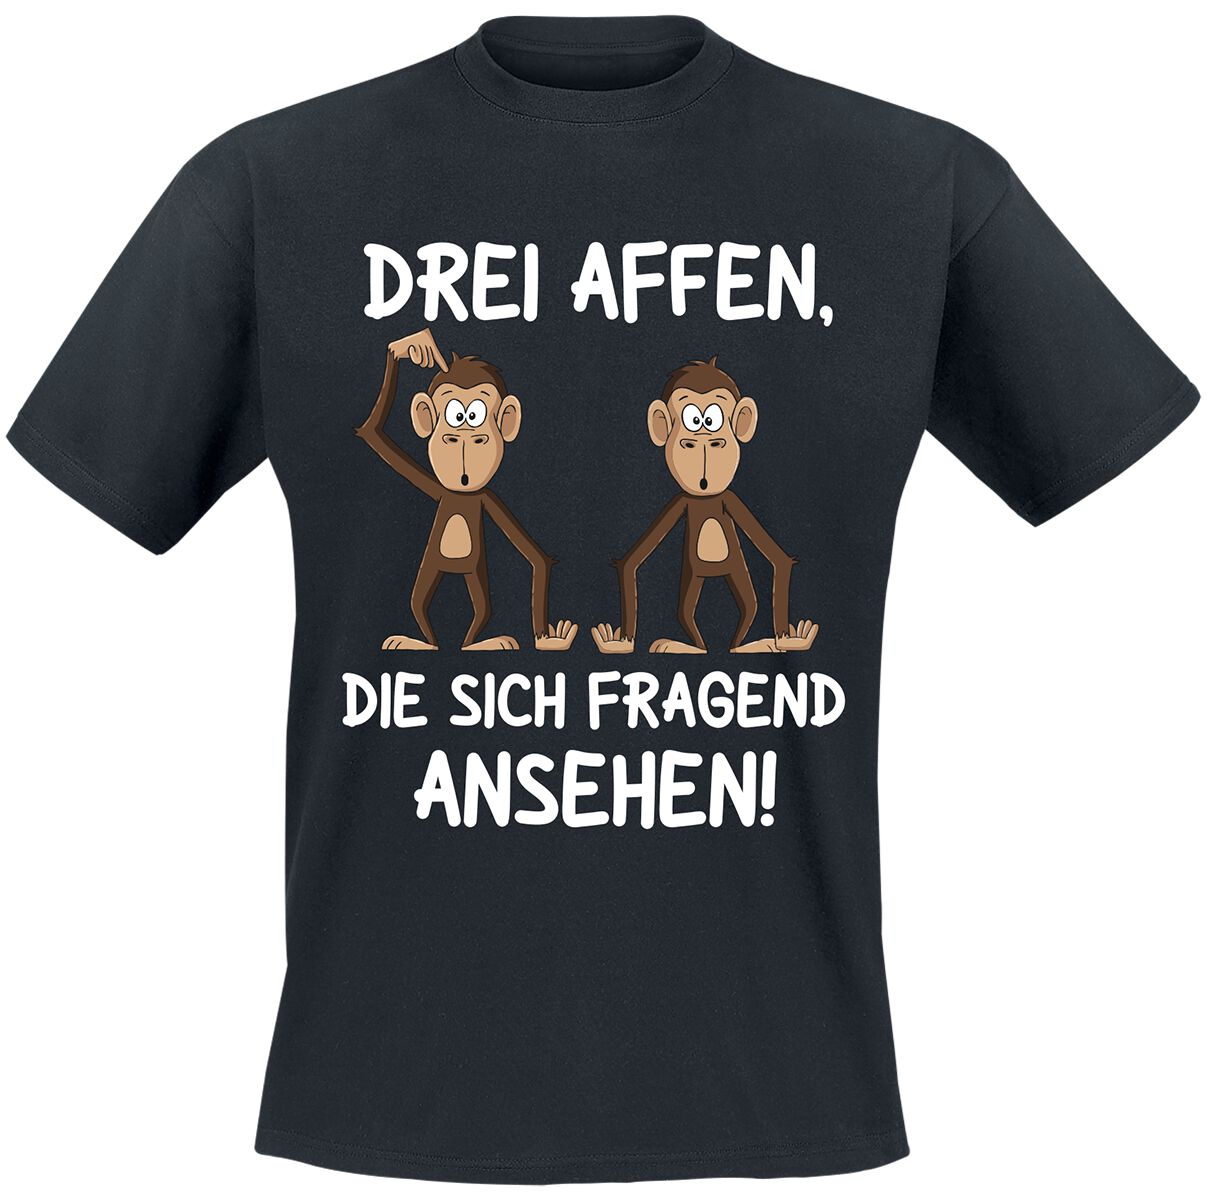 Tierisch T-Shirt - Drei Affen, die sich fragend ansehen! - M bis 4XL - für Männer - Größe M - schwarz